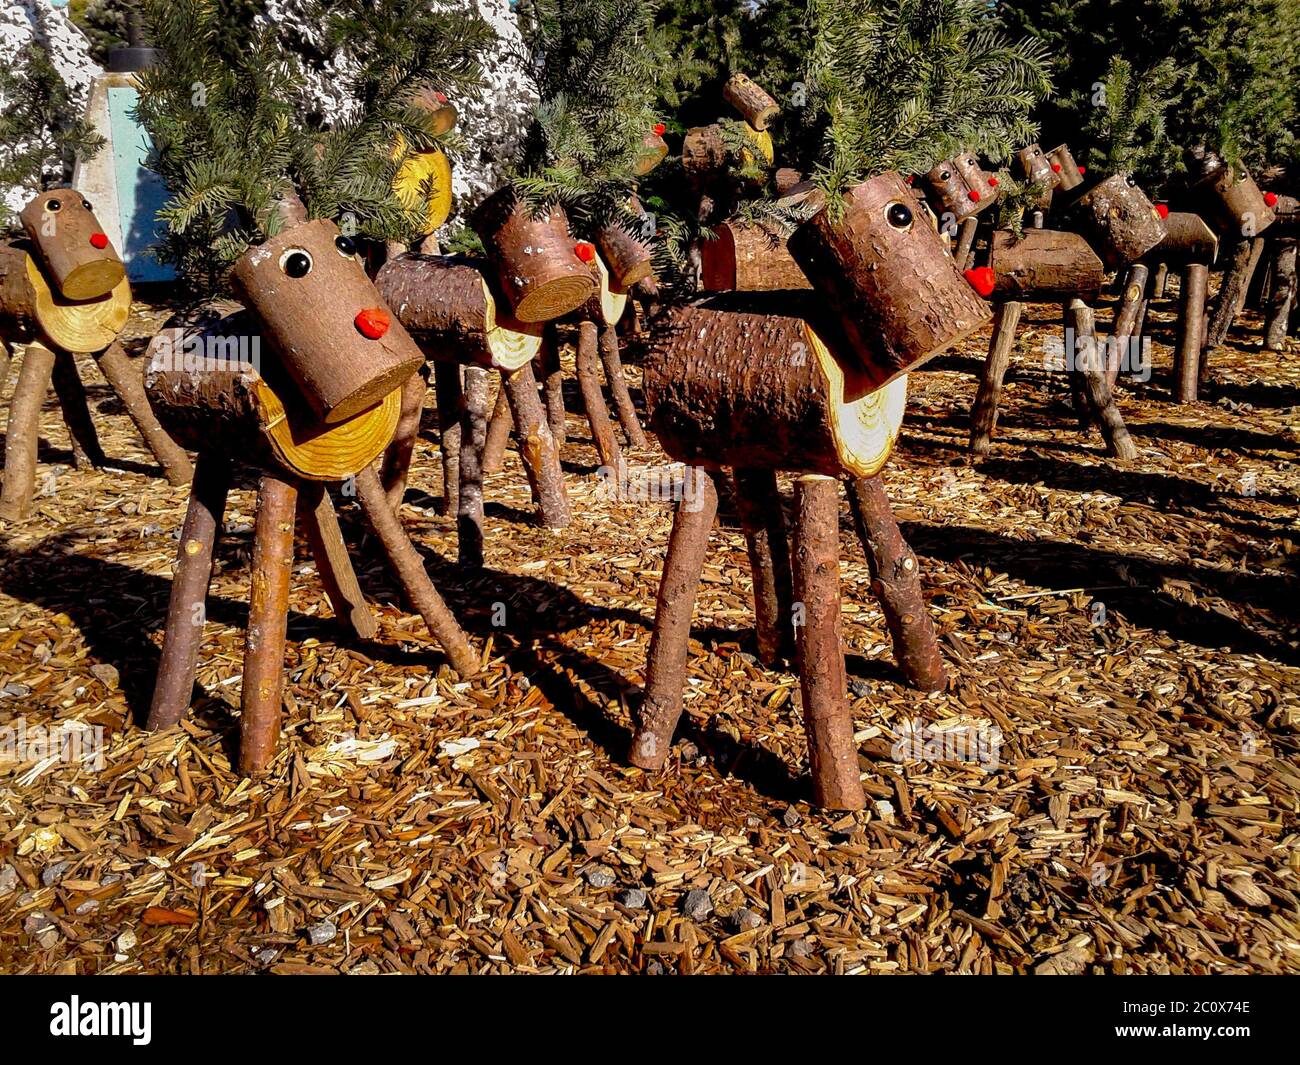 Holzmodelle von Rudolph dem Rotnasenrentier aus gesägten Baumstämmen sind zur Weihnachtszeit in Laguna Niguel, CA, zum Verkauf. Stockfoto